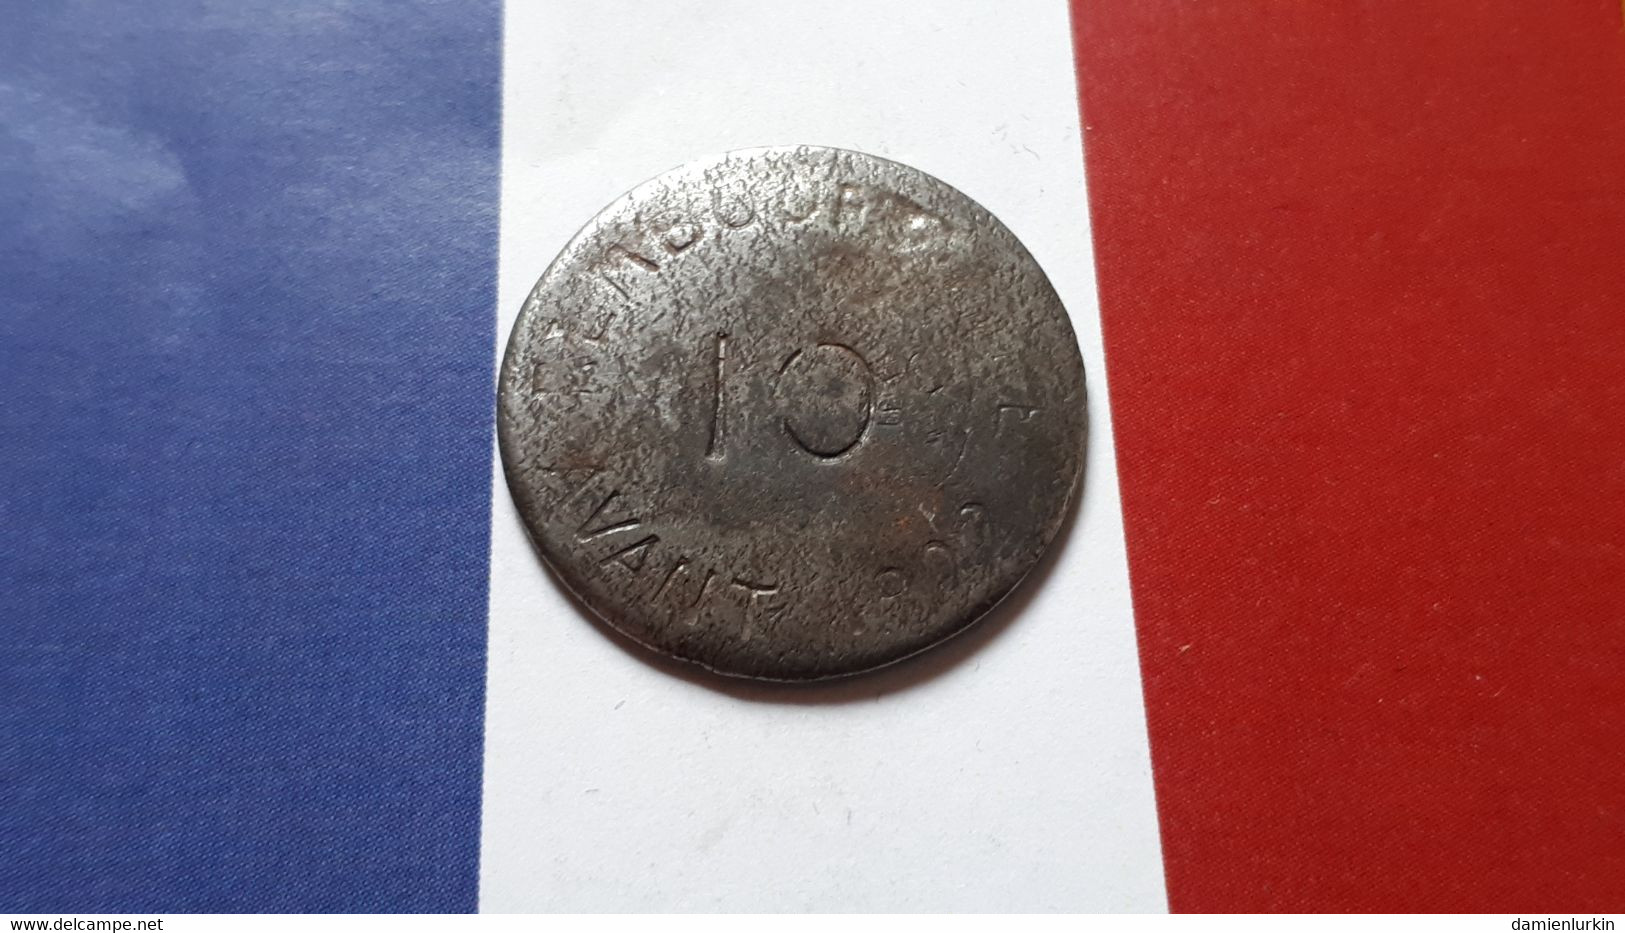 FRANCE BAYONNE 10 CENTIMES NECESSITE 1917-1922 CHAMBRE DE COMMERCE FER FRAPPE MEDAILLE - Monétaires / De Nécessité